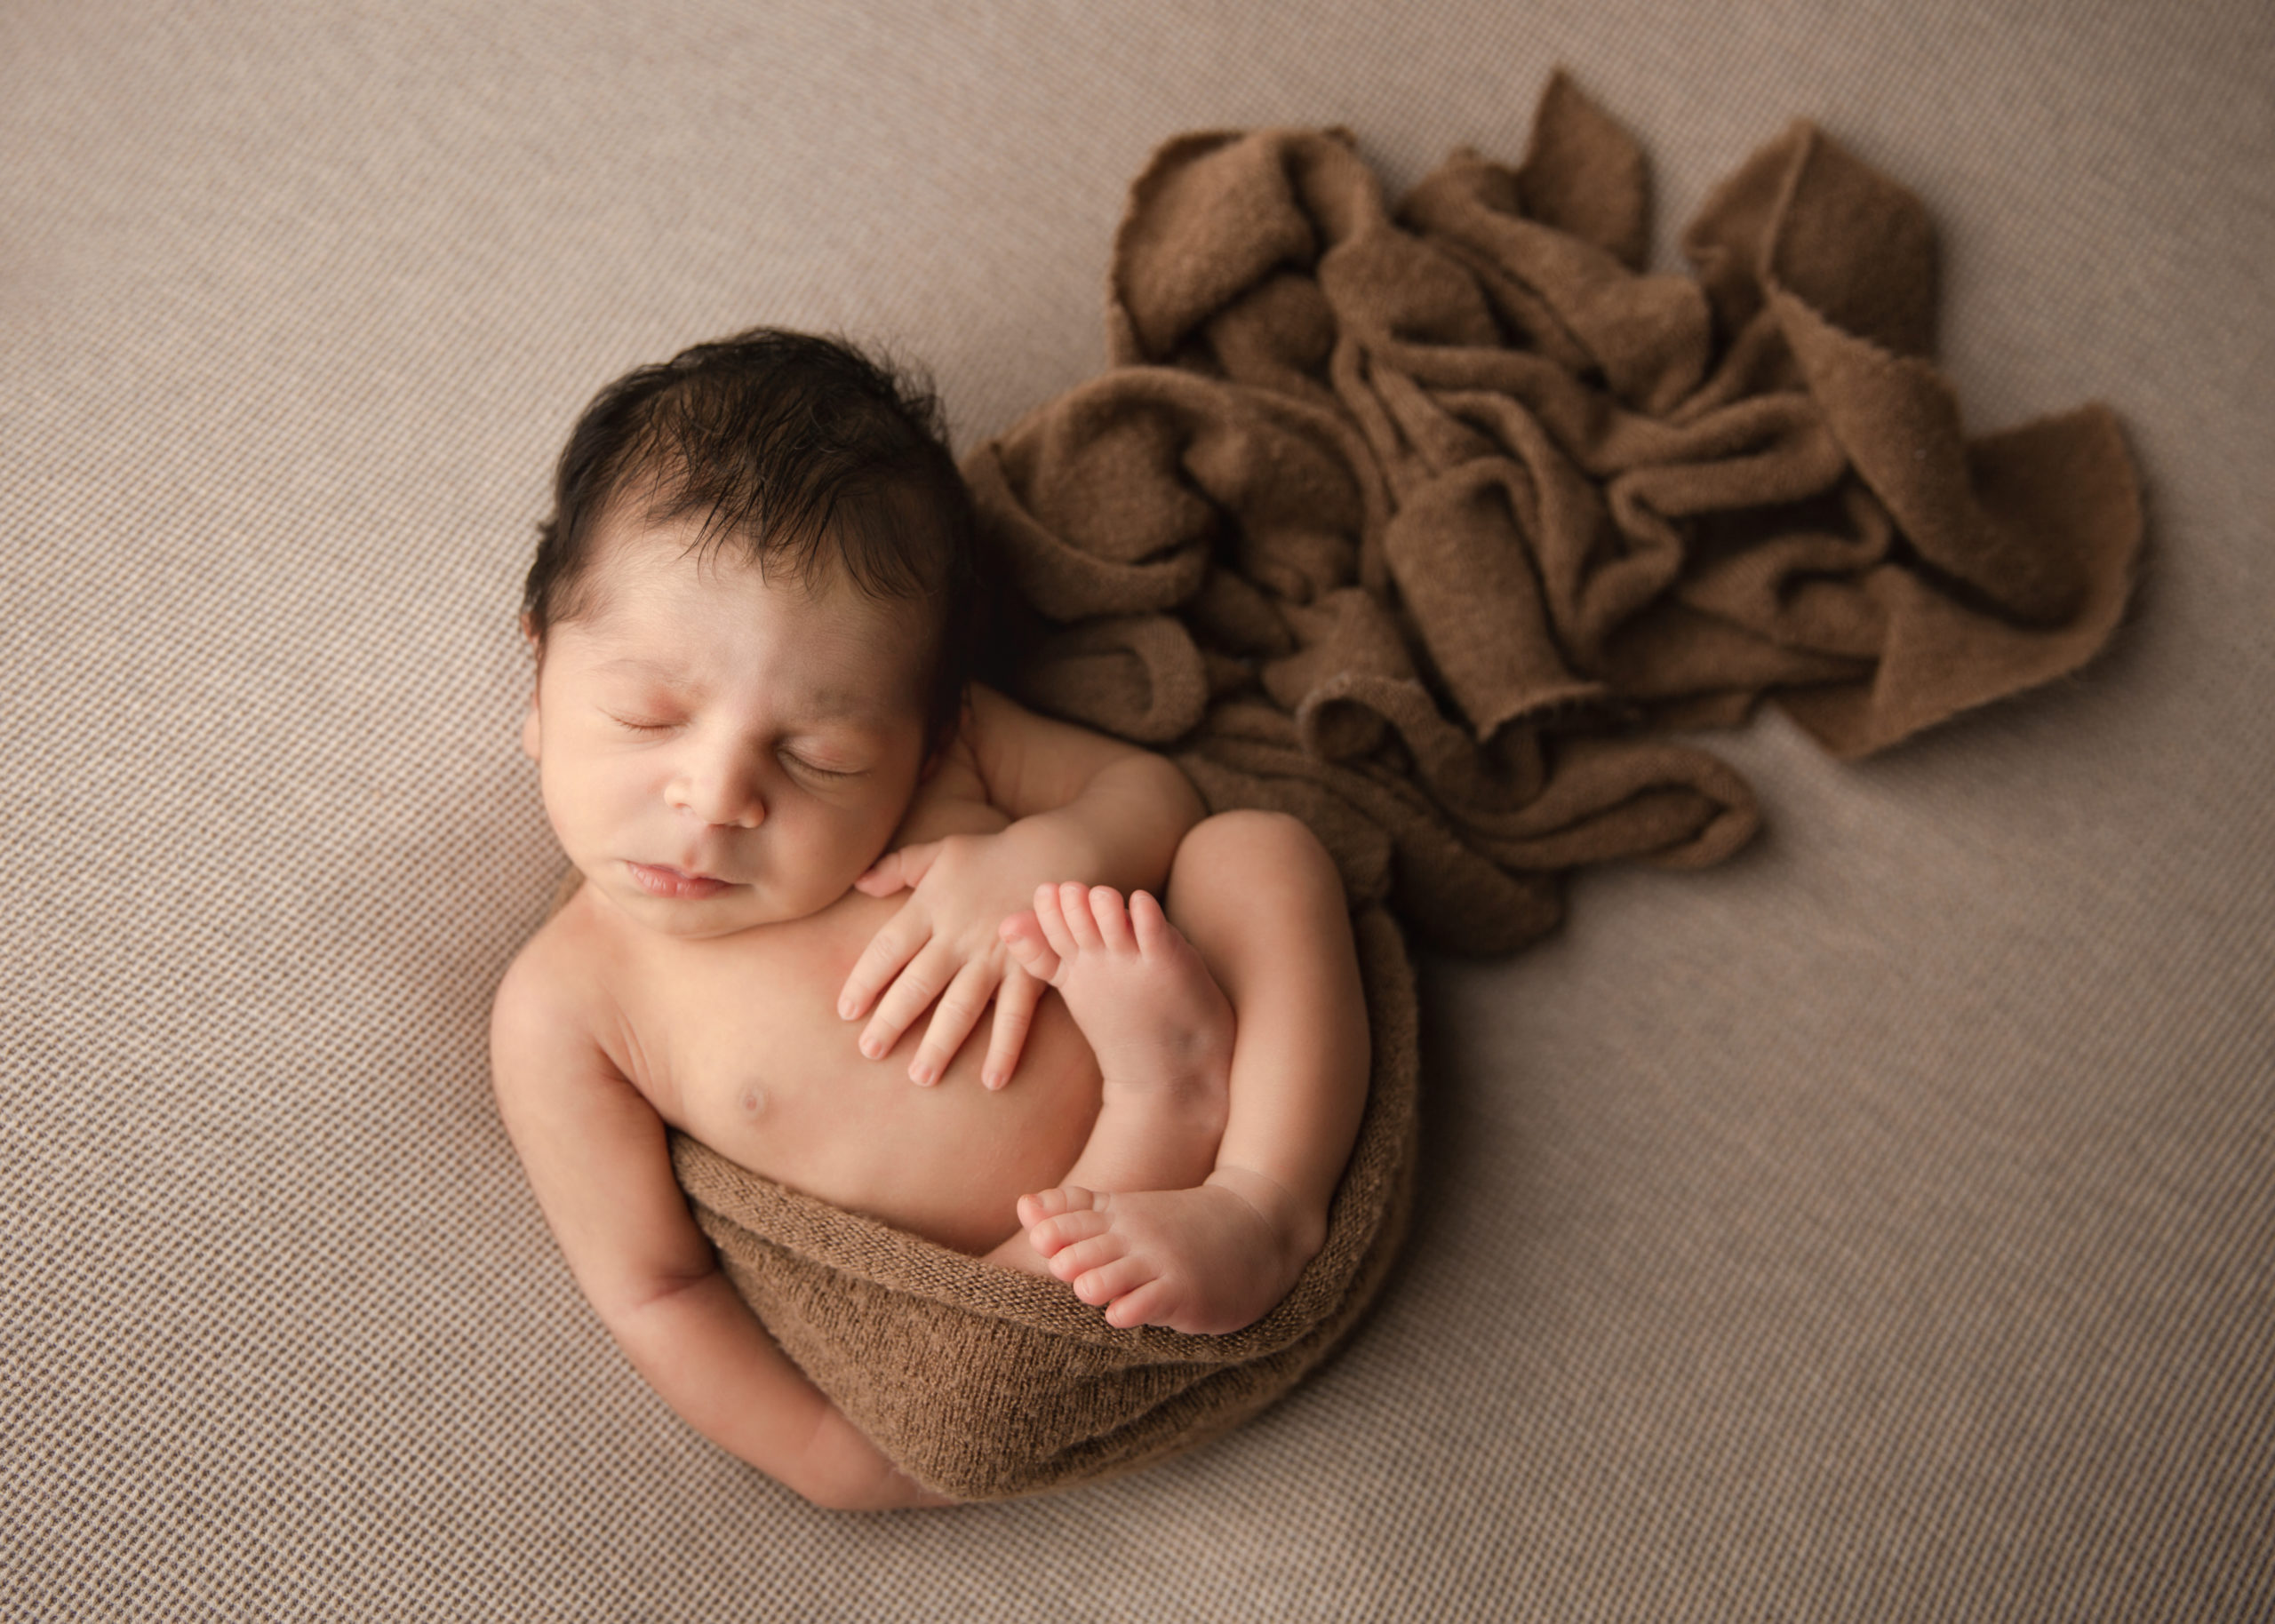 Newborn baby boy on a brown blanket